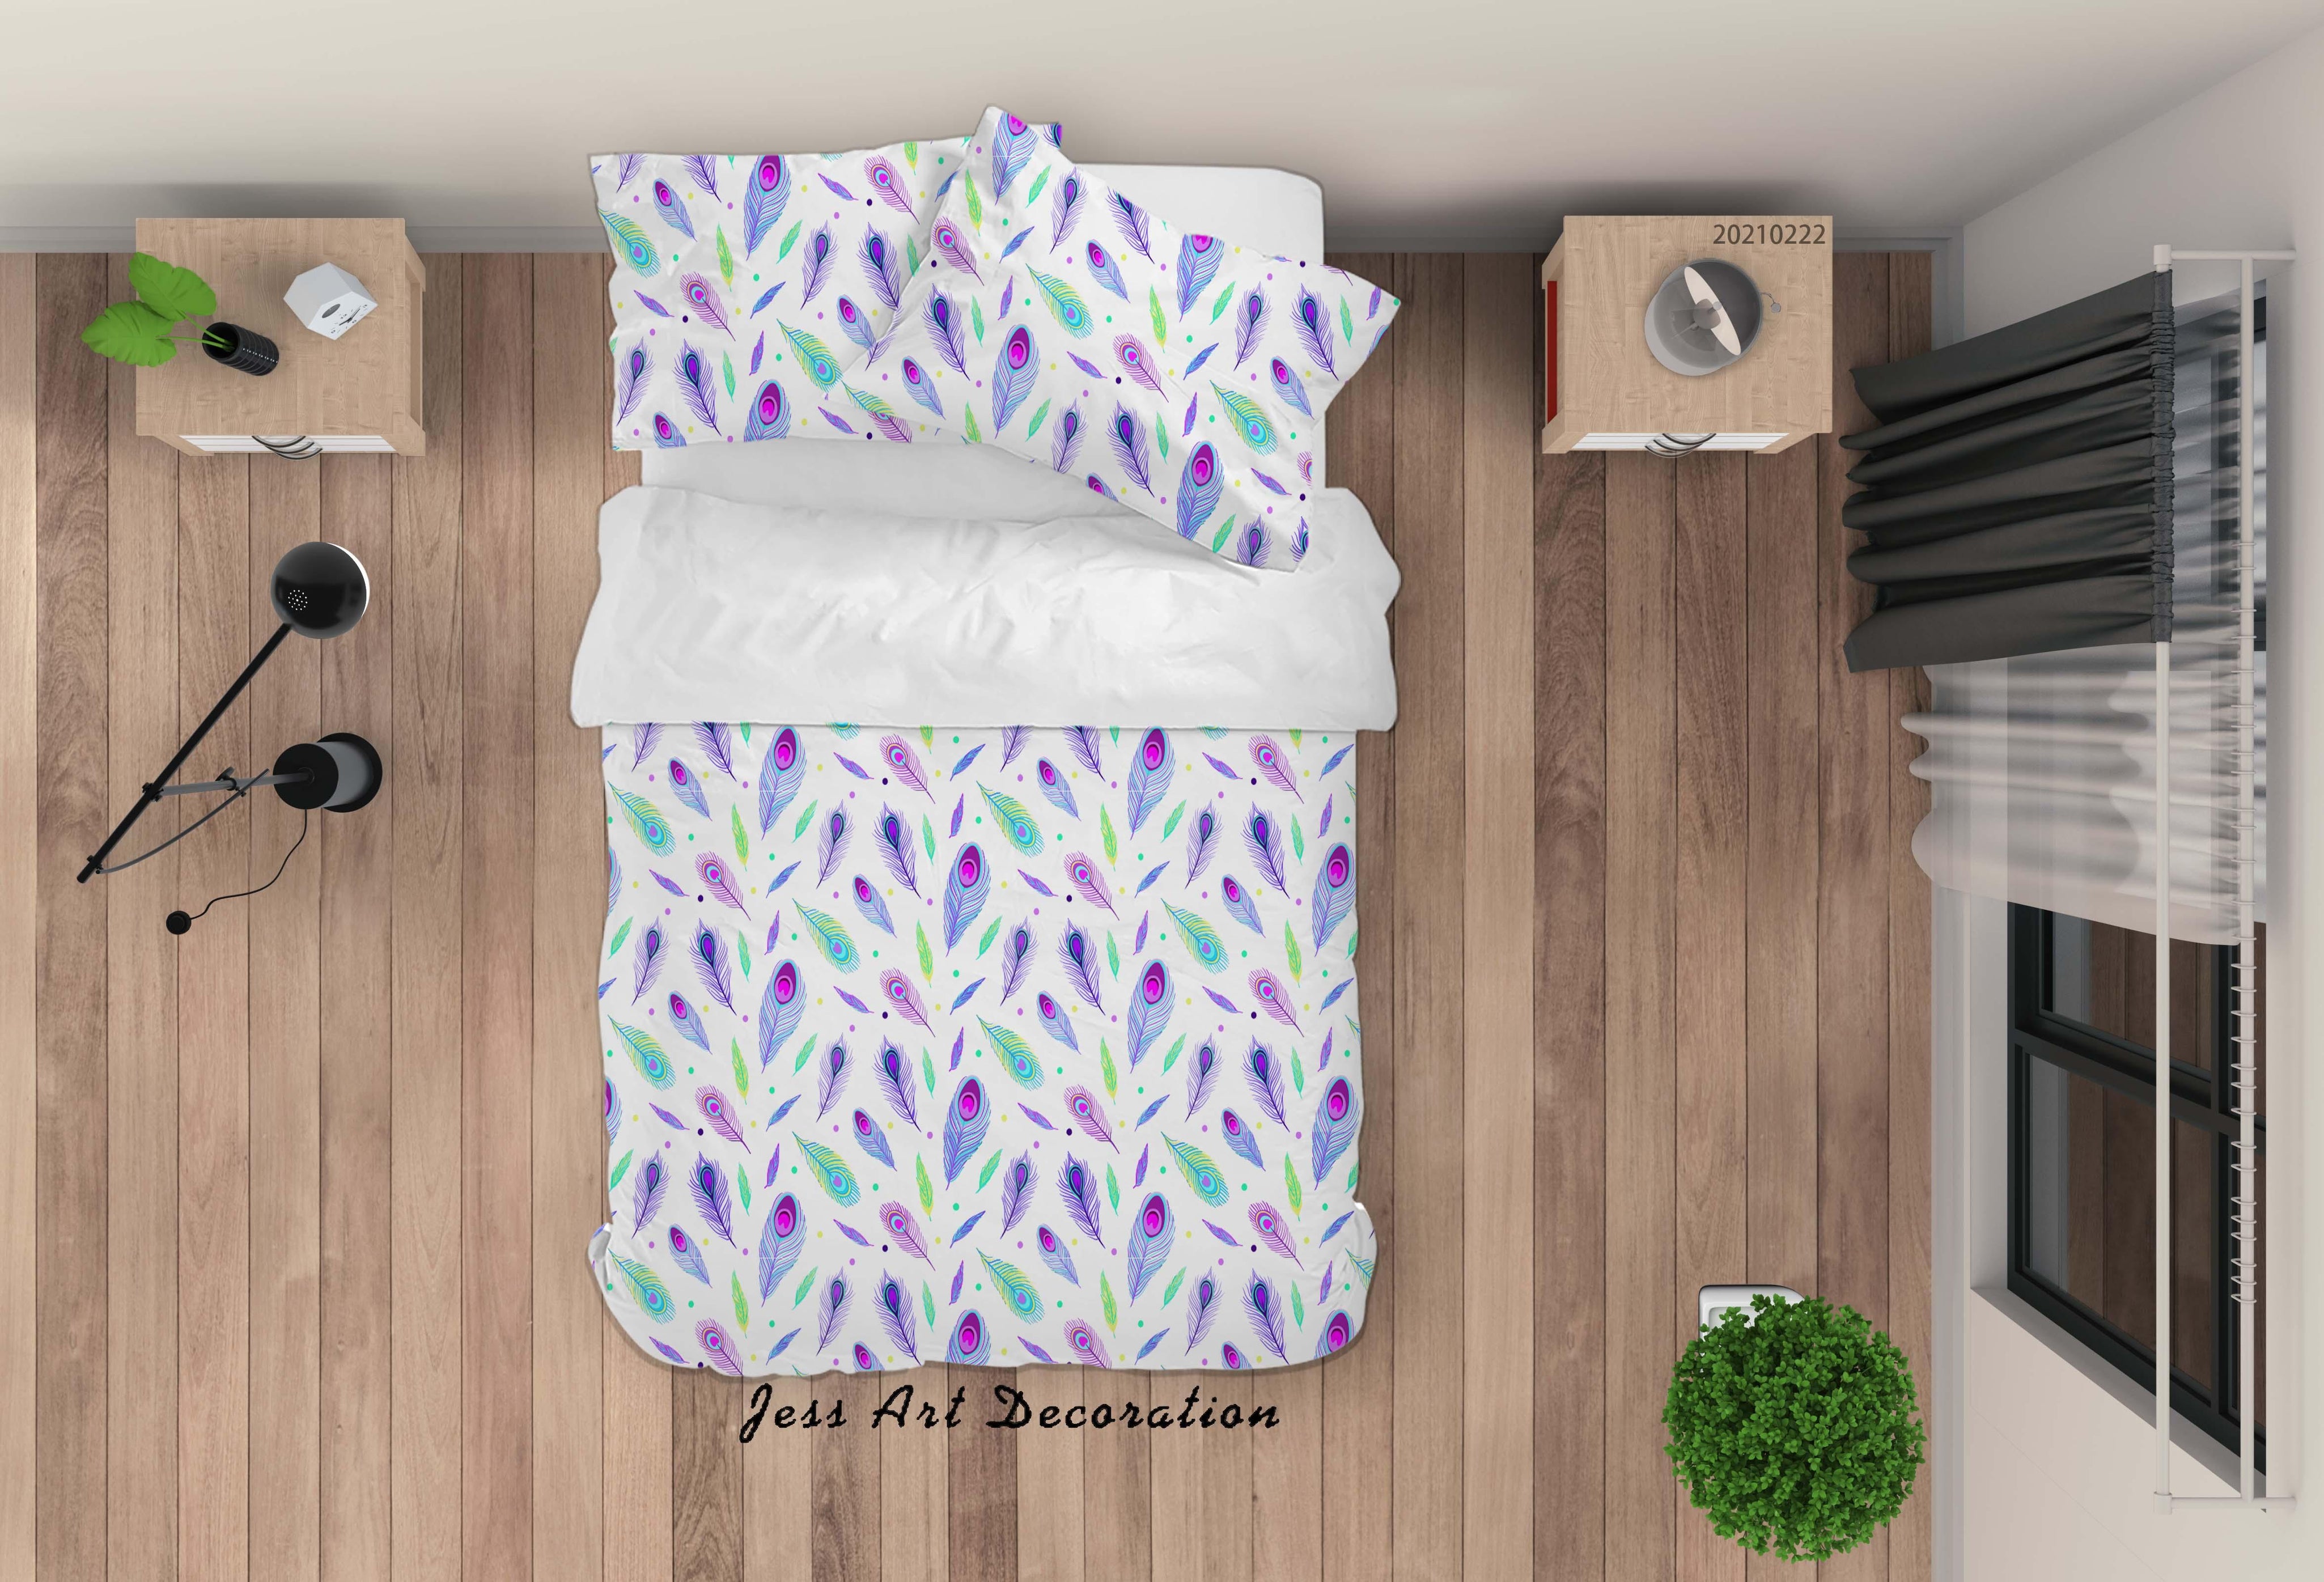 3D Watercolor Peacock Feather Quilt Cover Set Bedding Set Duvet Cover Pillowcases 140- Jess Art Decoration